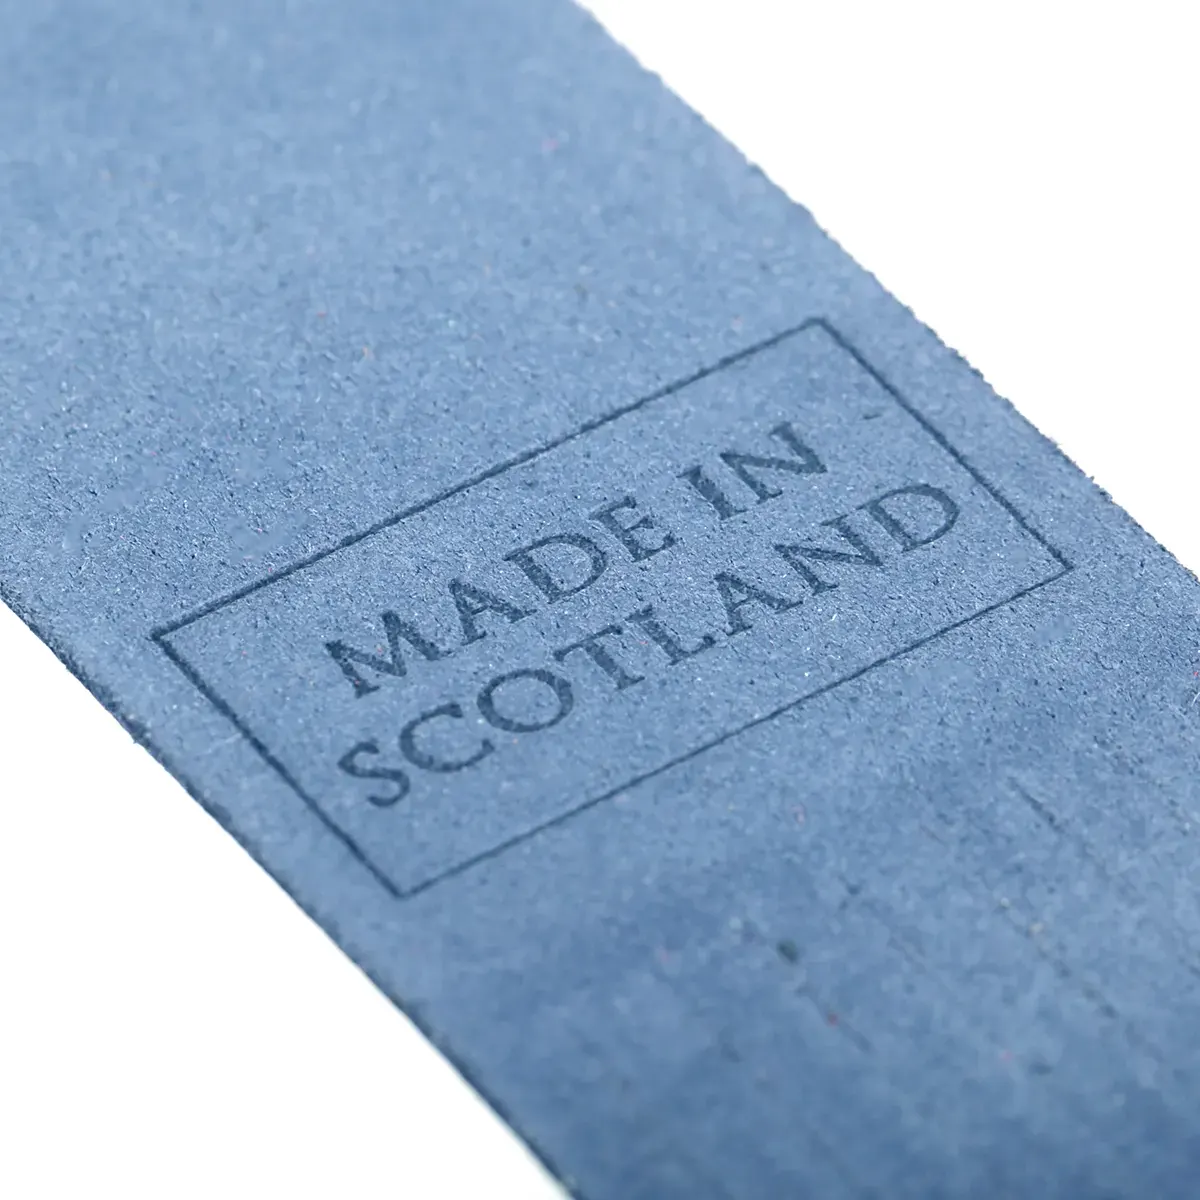 Scotland - Leder Lesezeichen aus Schottland in Hellblau - Made in Scotland